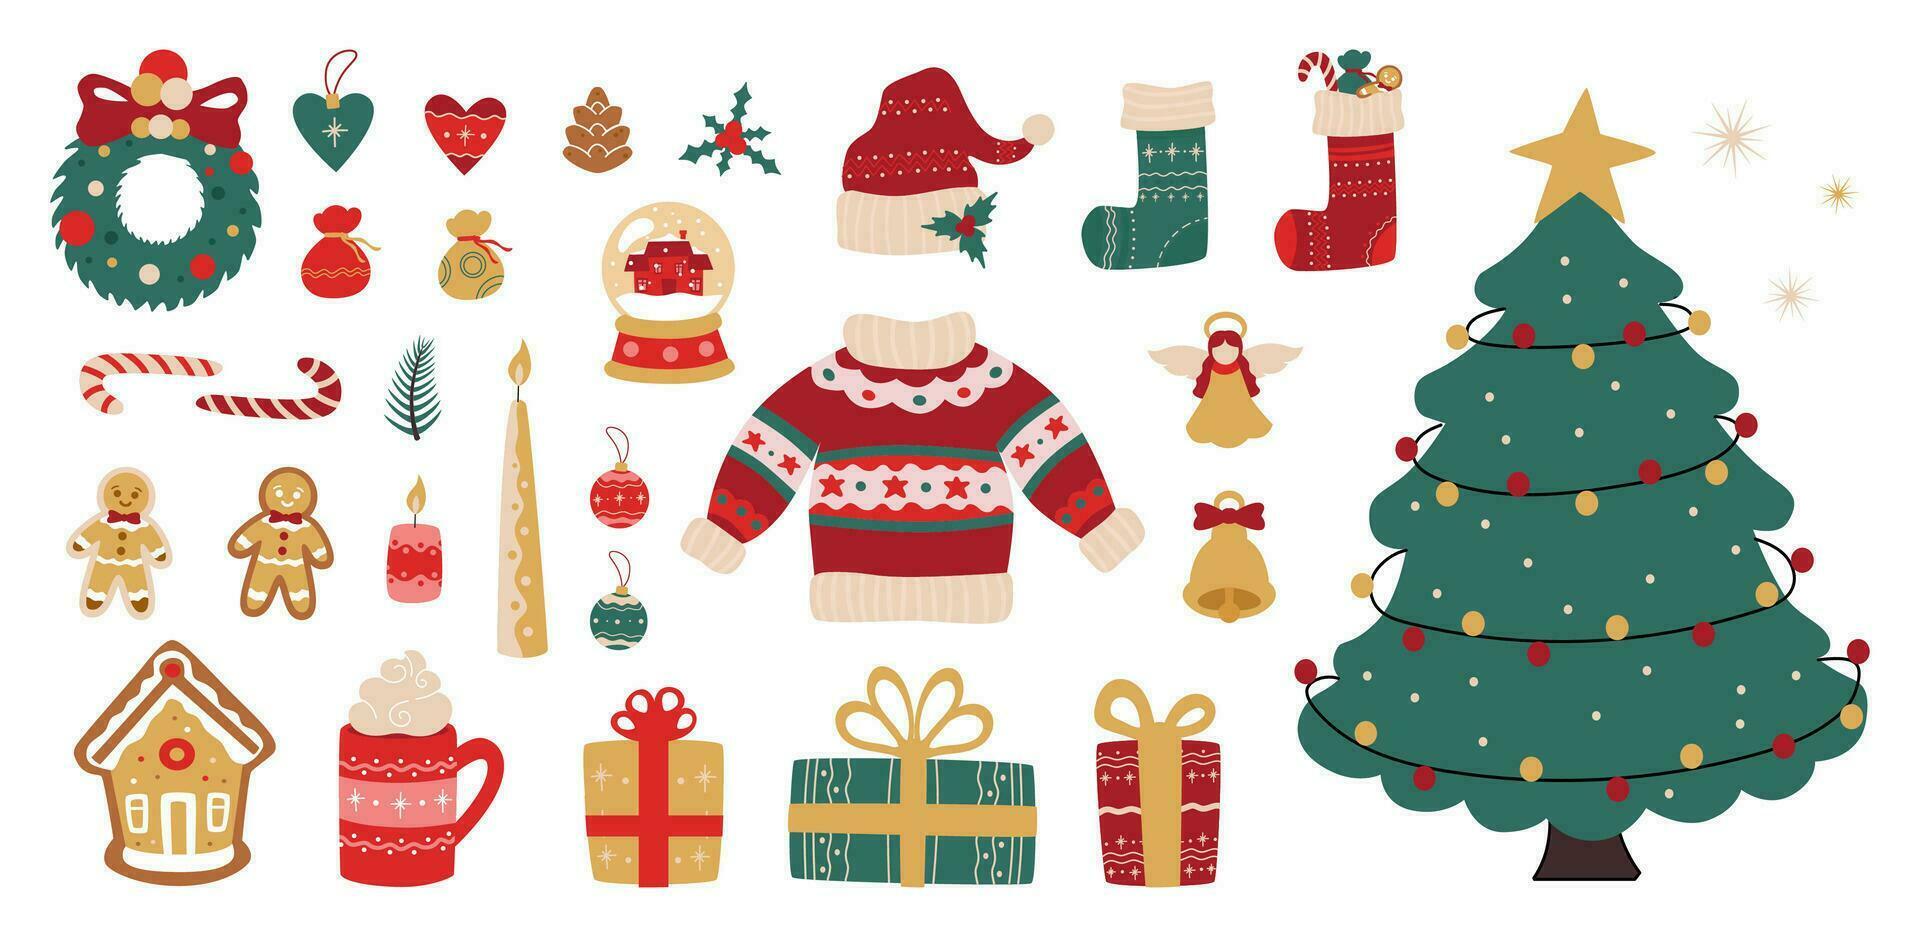 joyeux Noël conception éléments, autocollant pack avec traditionnel Noël vacances panneaux et symboles, sapin arbre, cadeaux, chaussettes, pain d'épice bonbons, chaud vêtements et autre. vecteur décoratif illustration.